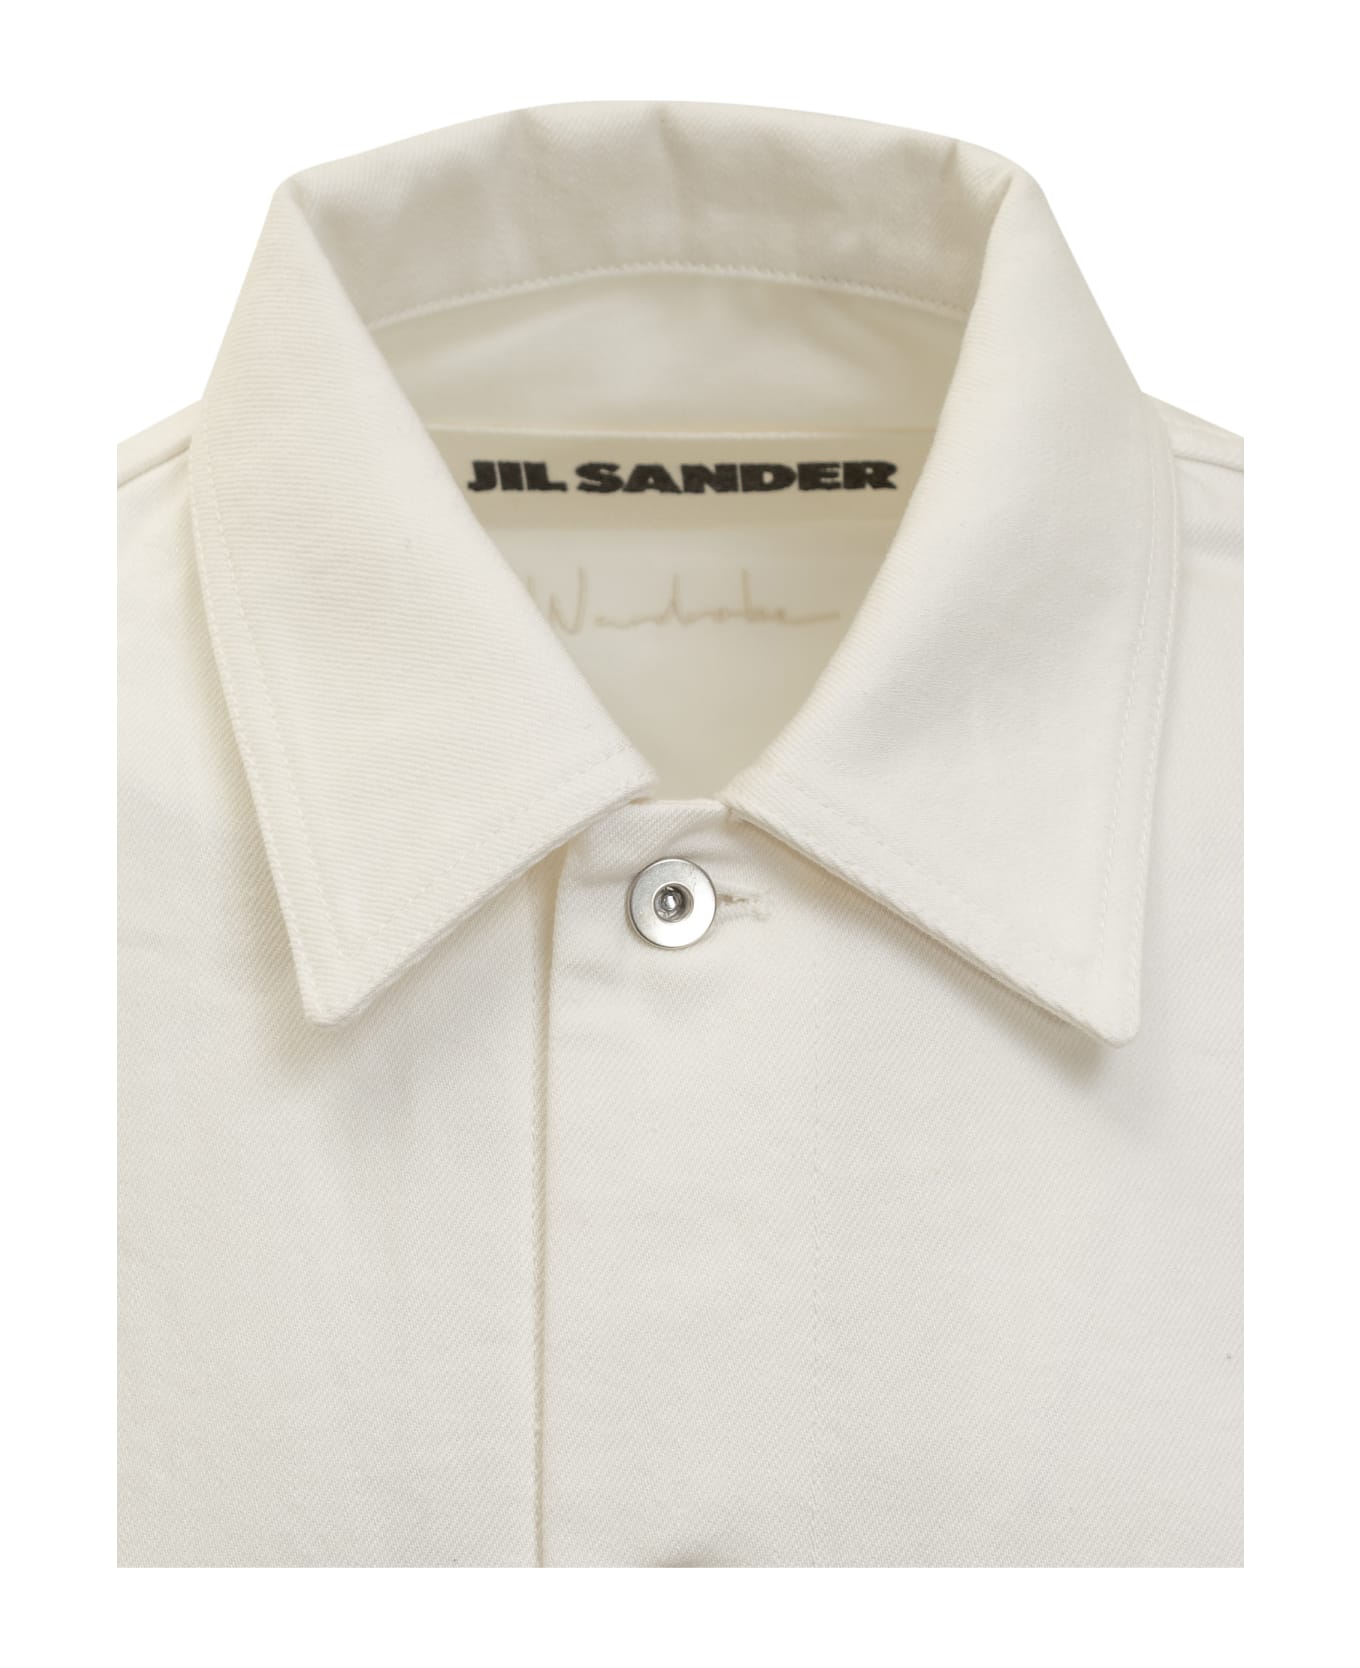 Jil Sander 01 Shirt - PORCELAIN